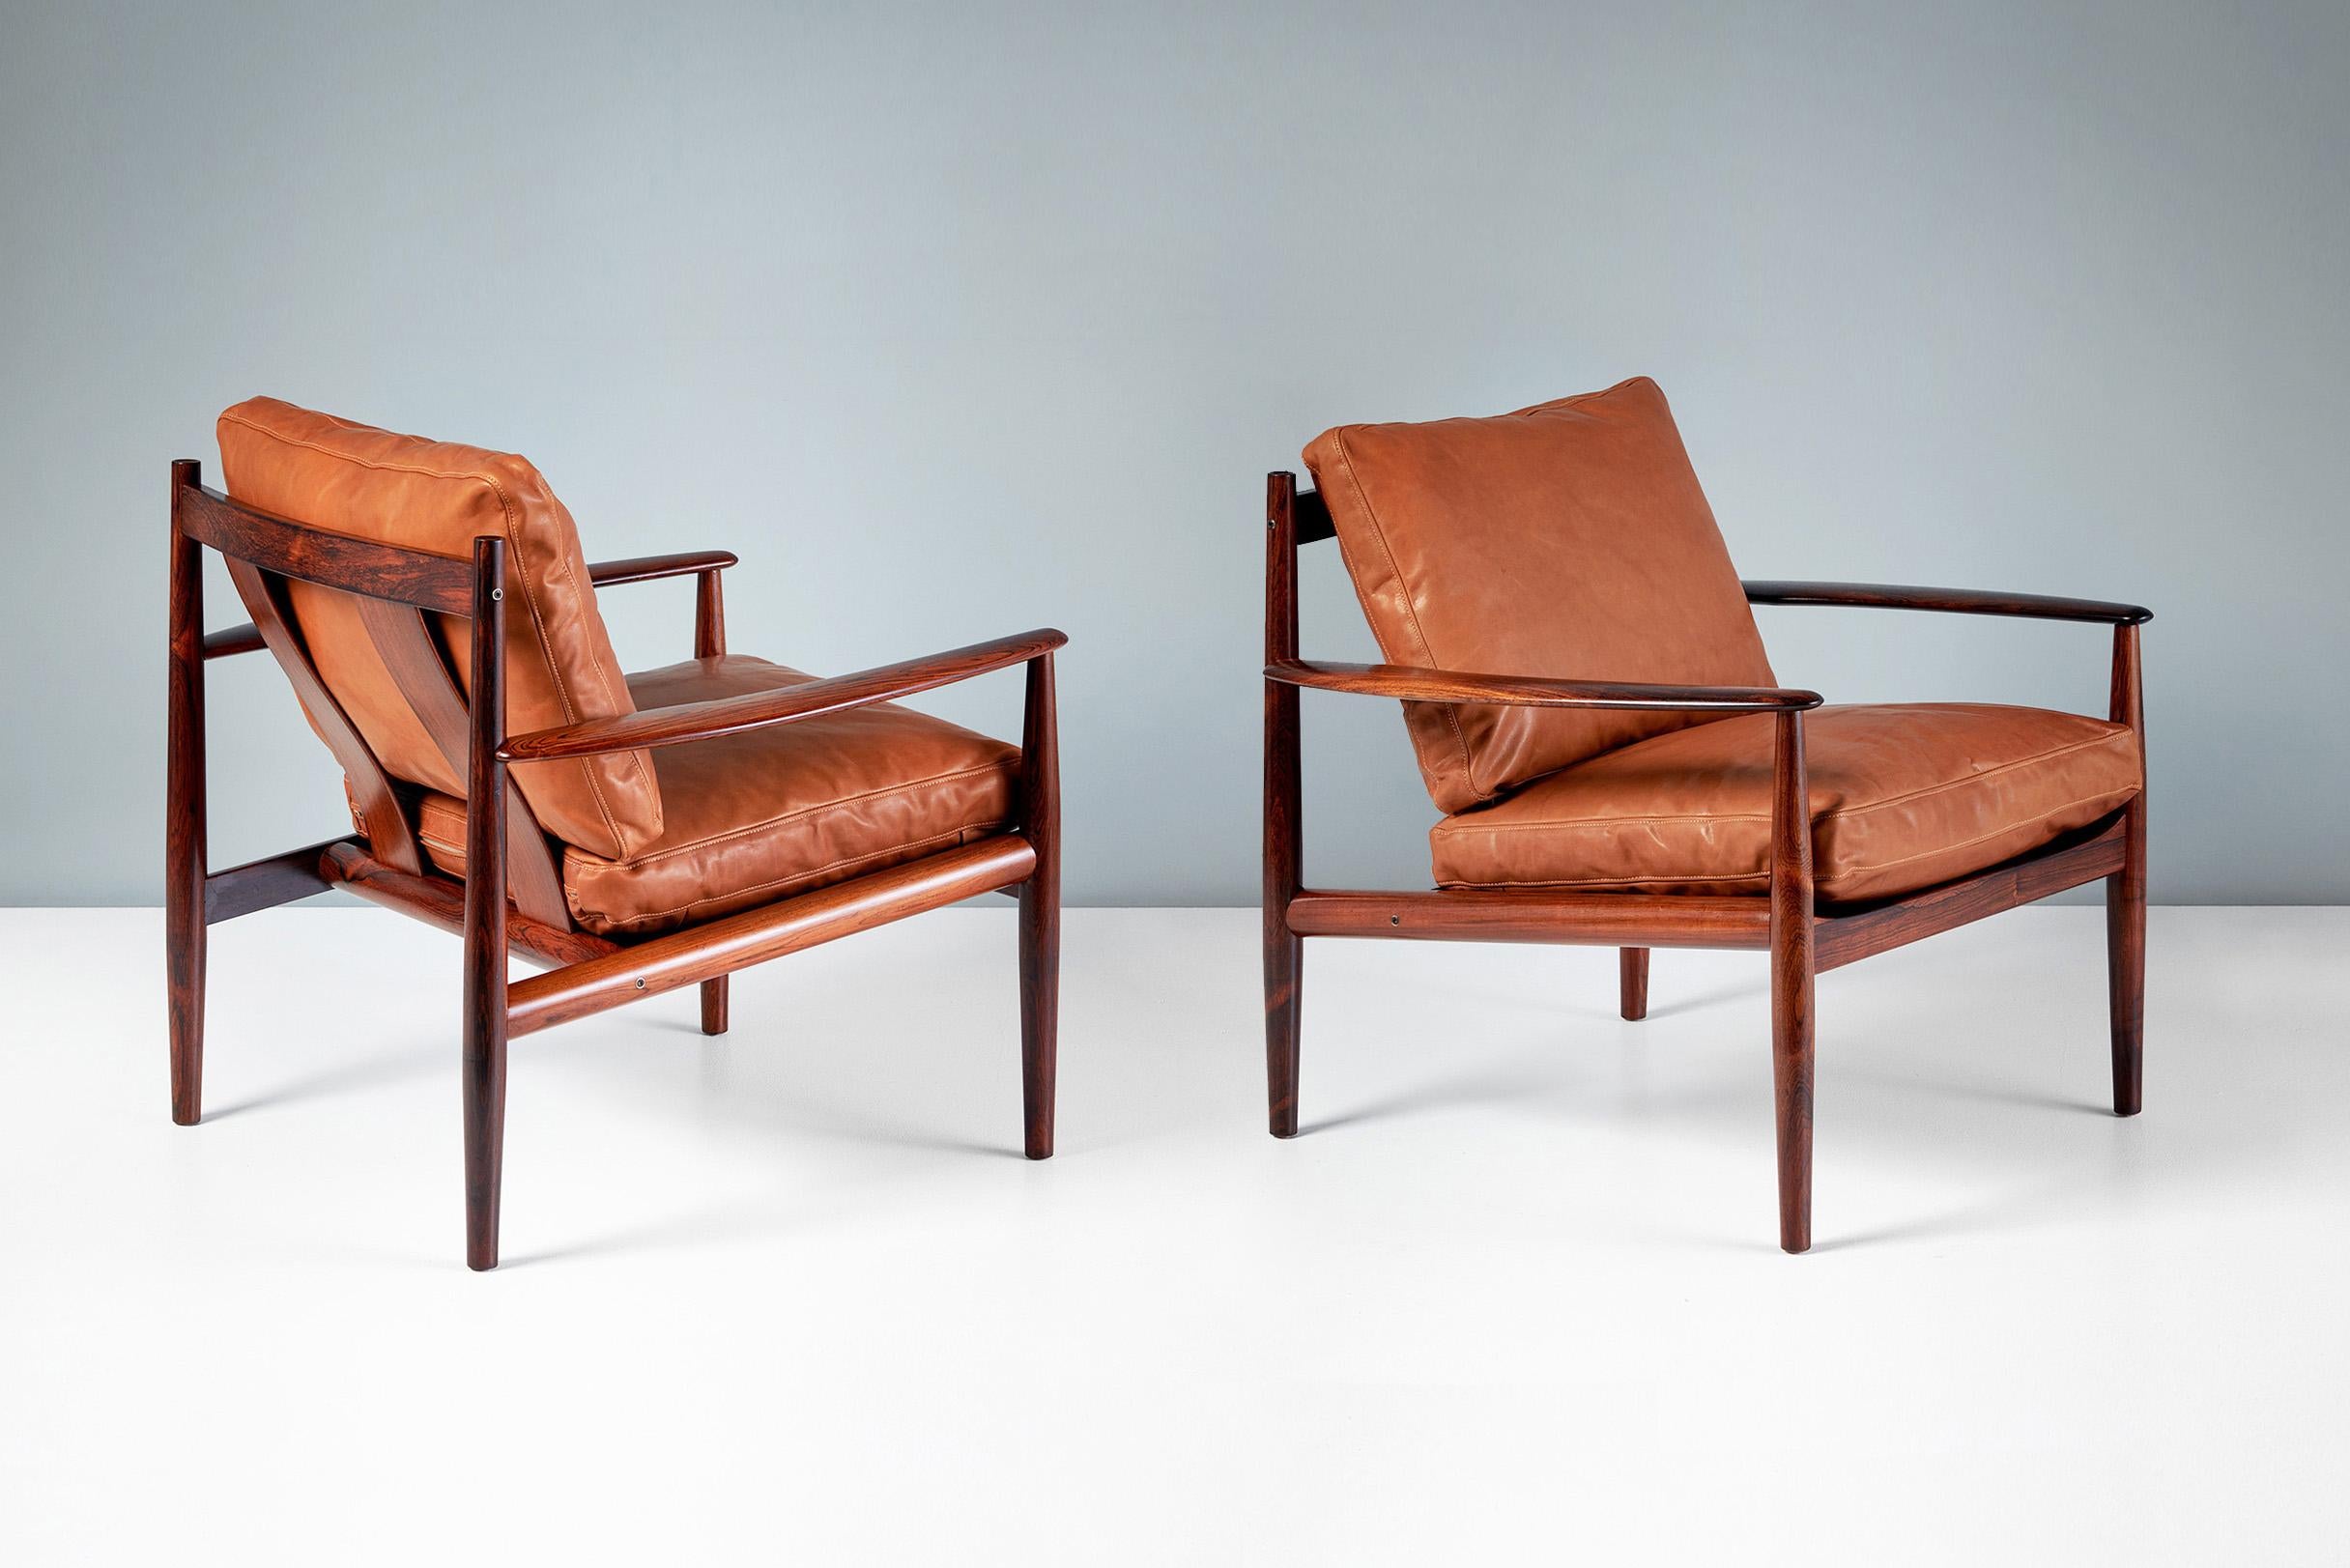 Grete Jalk - Paar Loungesessel Modell 128, um 1963

Ein Paar exquisite Lounge-Stühle aus Palisanderholz, hergestellt von France & Son, Dänemark, um 1960. Die neuen Federkissen sind mit hochwertigem, cognacbraunem Anilinleder bezogen.